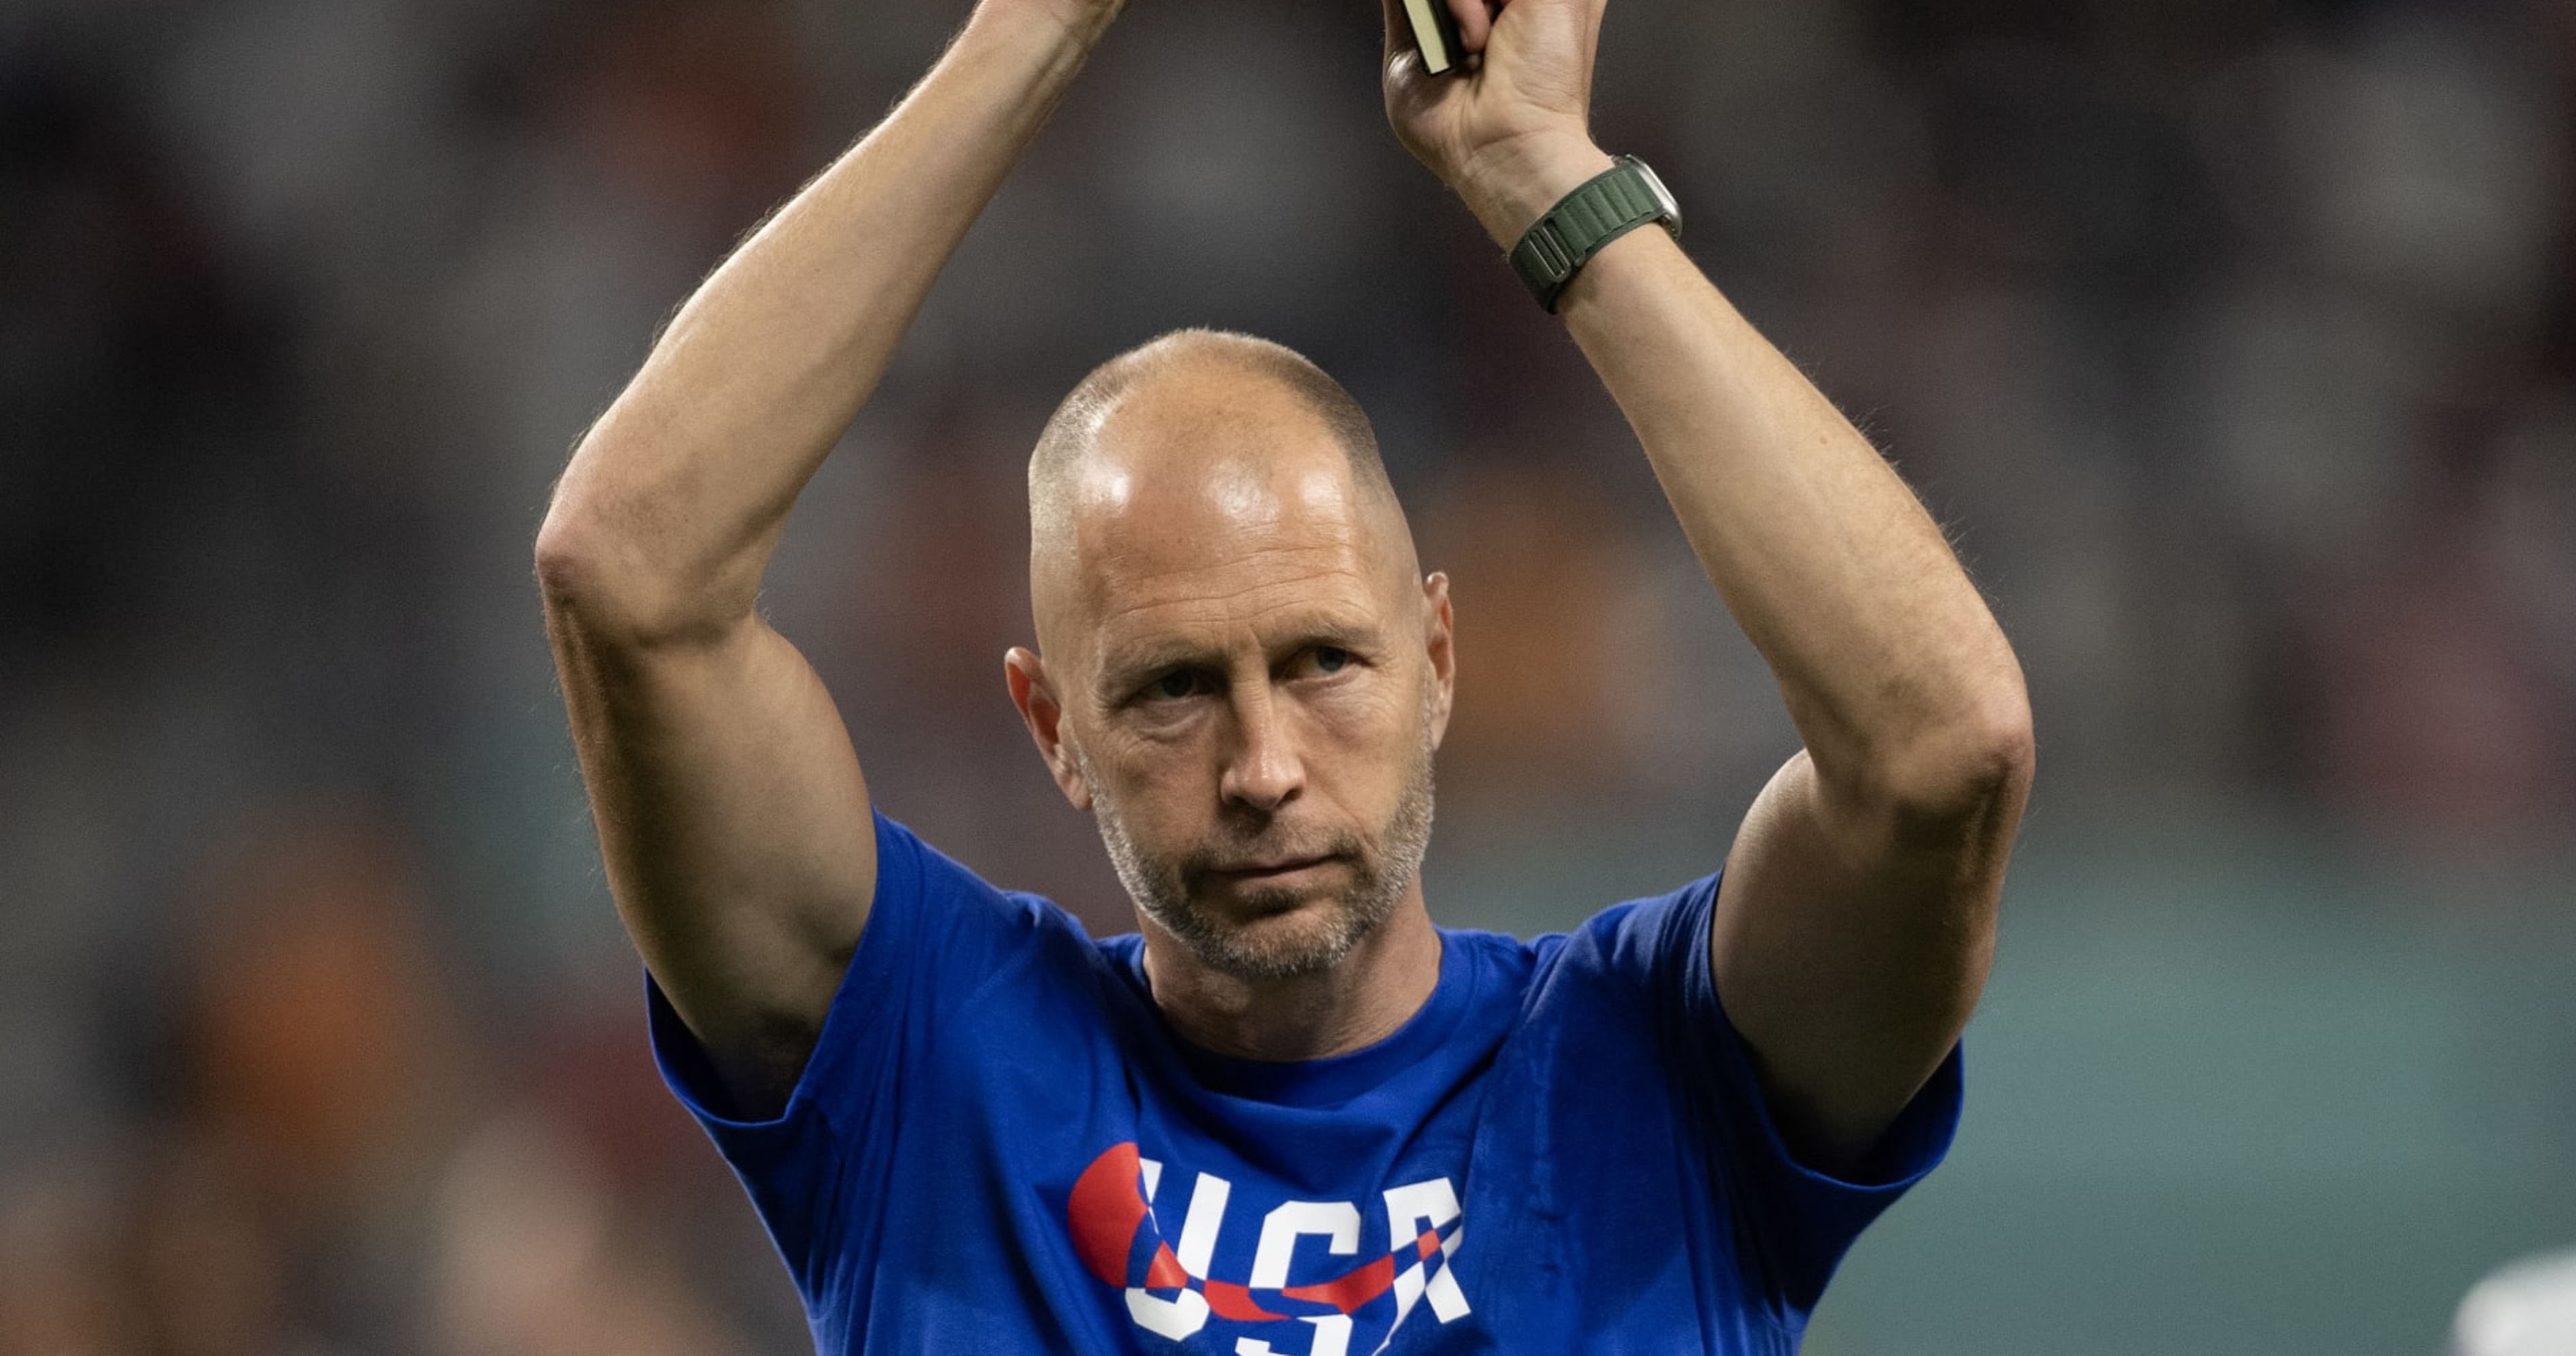 Gregg Berhalter Remains Candidate for USMNT Job After US Soccer Investigation